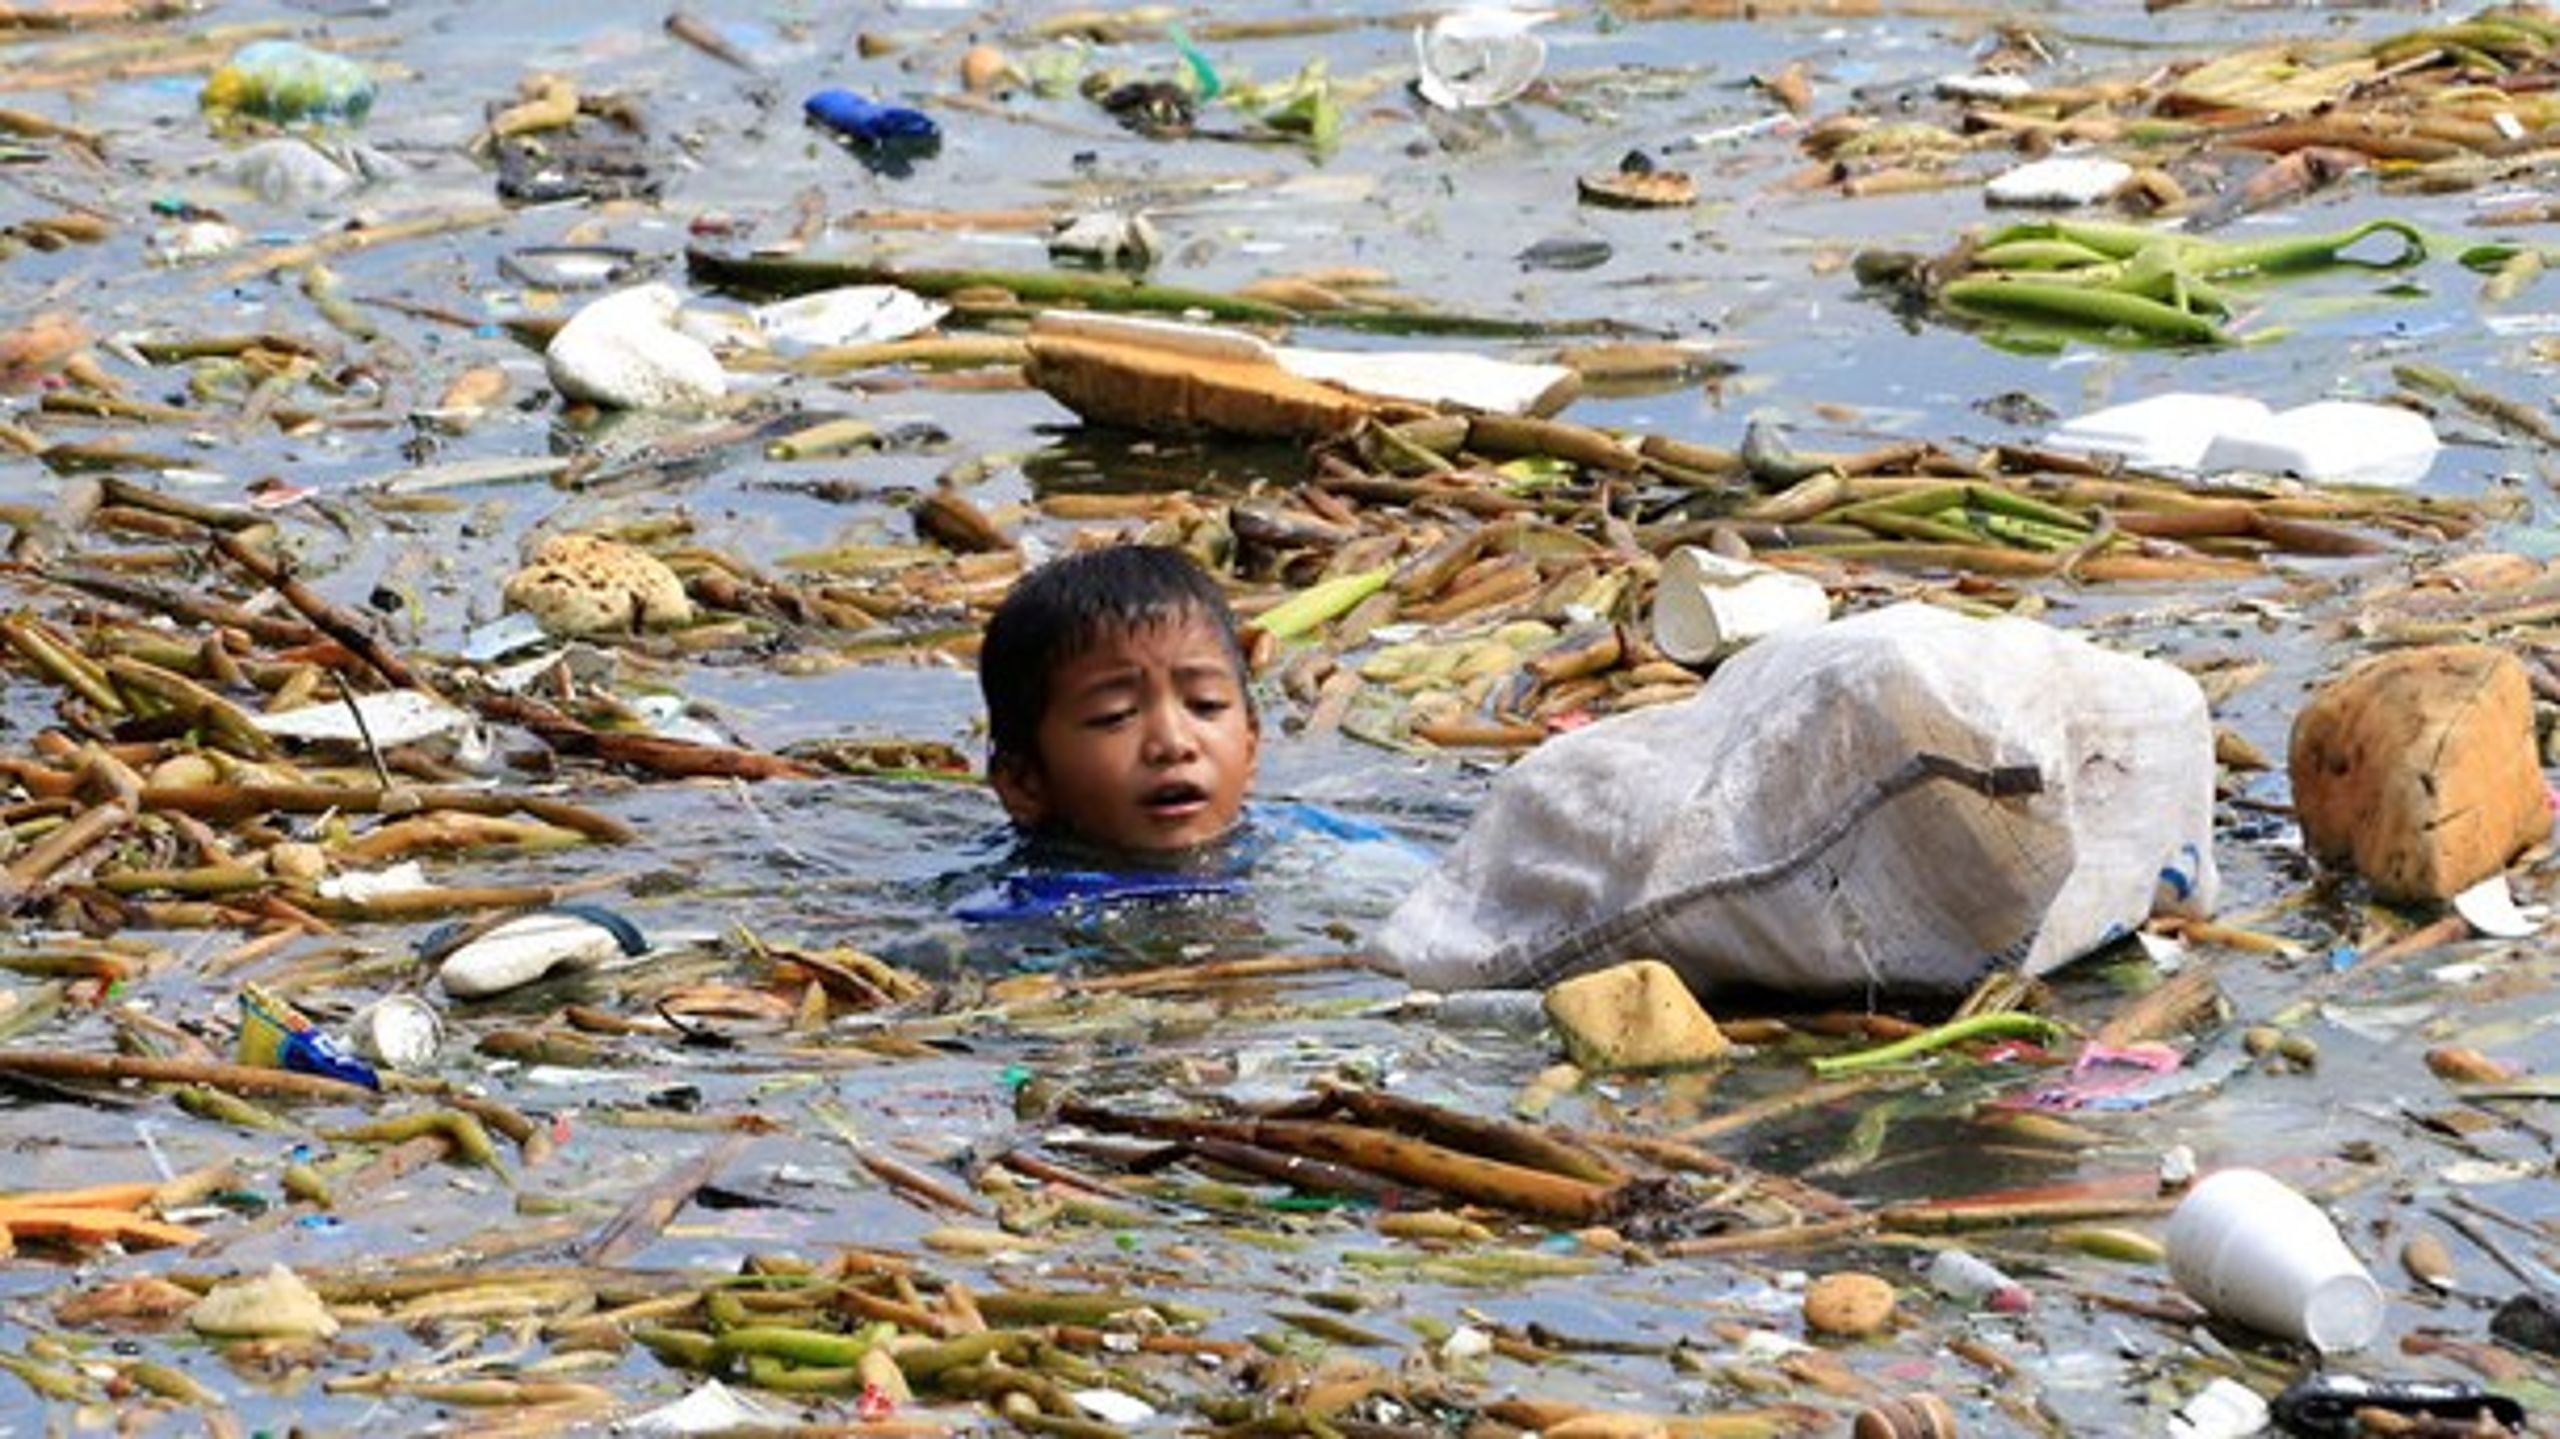 Plastikforurening er et voksende globalt problem, som Europa bliver nødt til at være med til at tackle, mener EU-Kommissionen. Derfor kommer den med en ny plastikstrategi i denne uge.&nbsp;Her svømmer en dreng&nbsp;på Filippinerne efter plastikaffald.